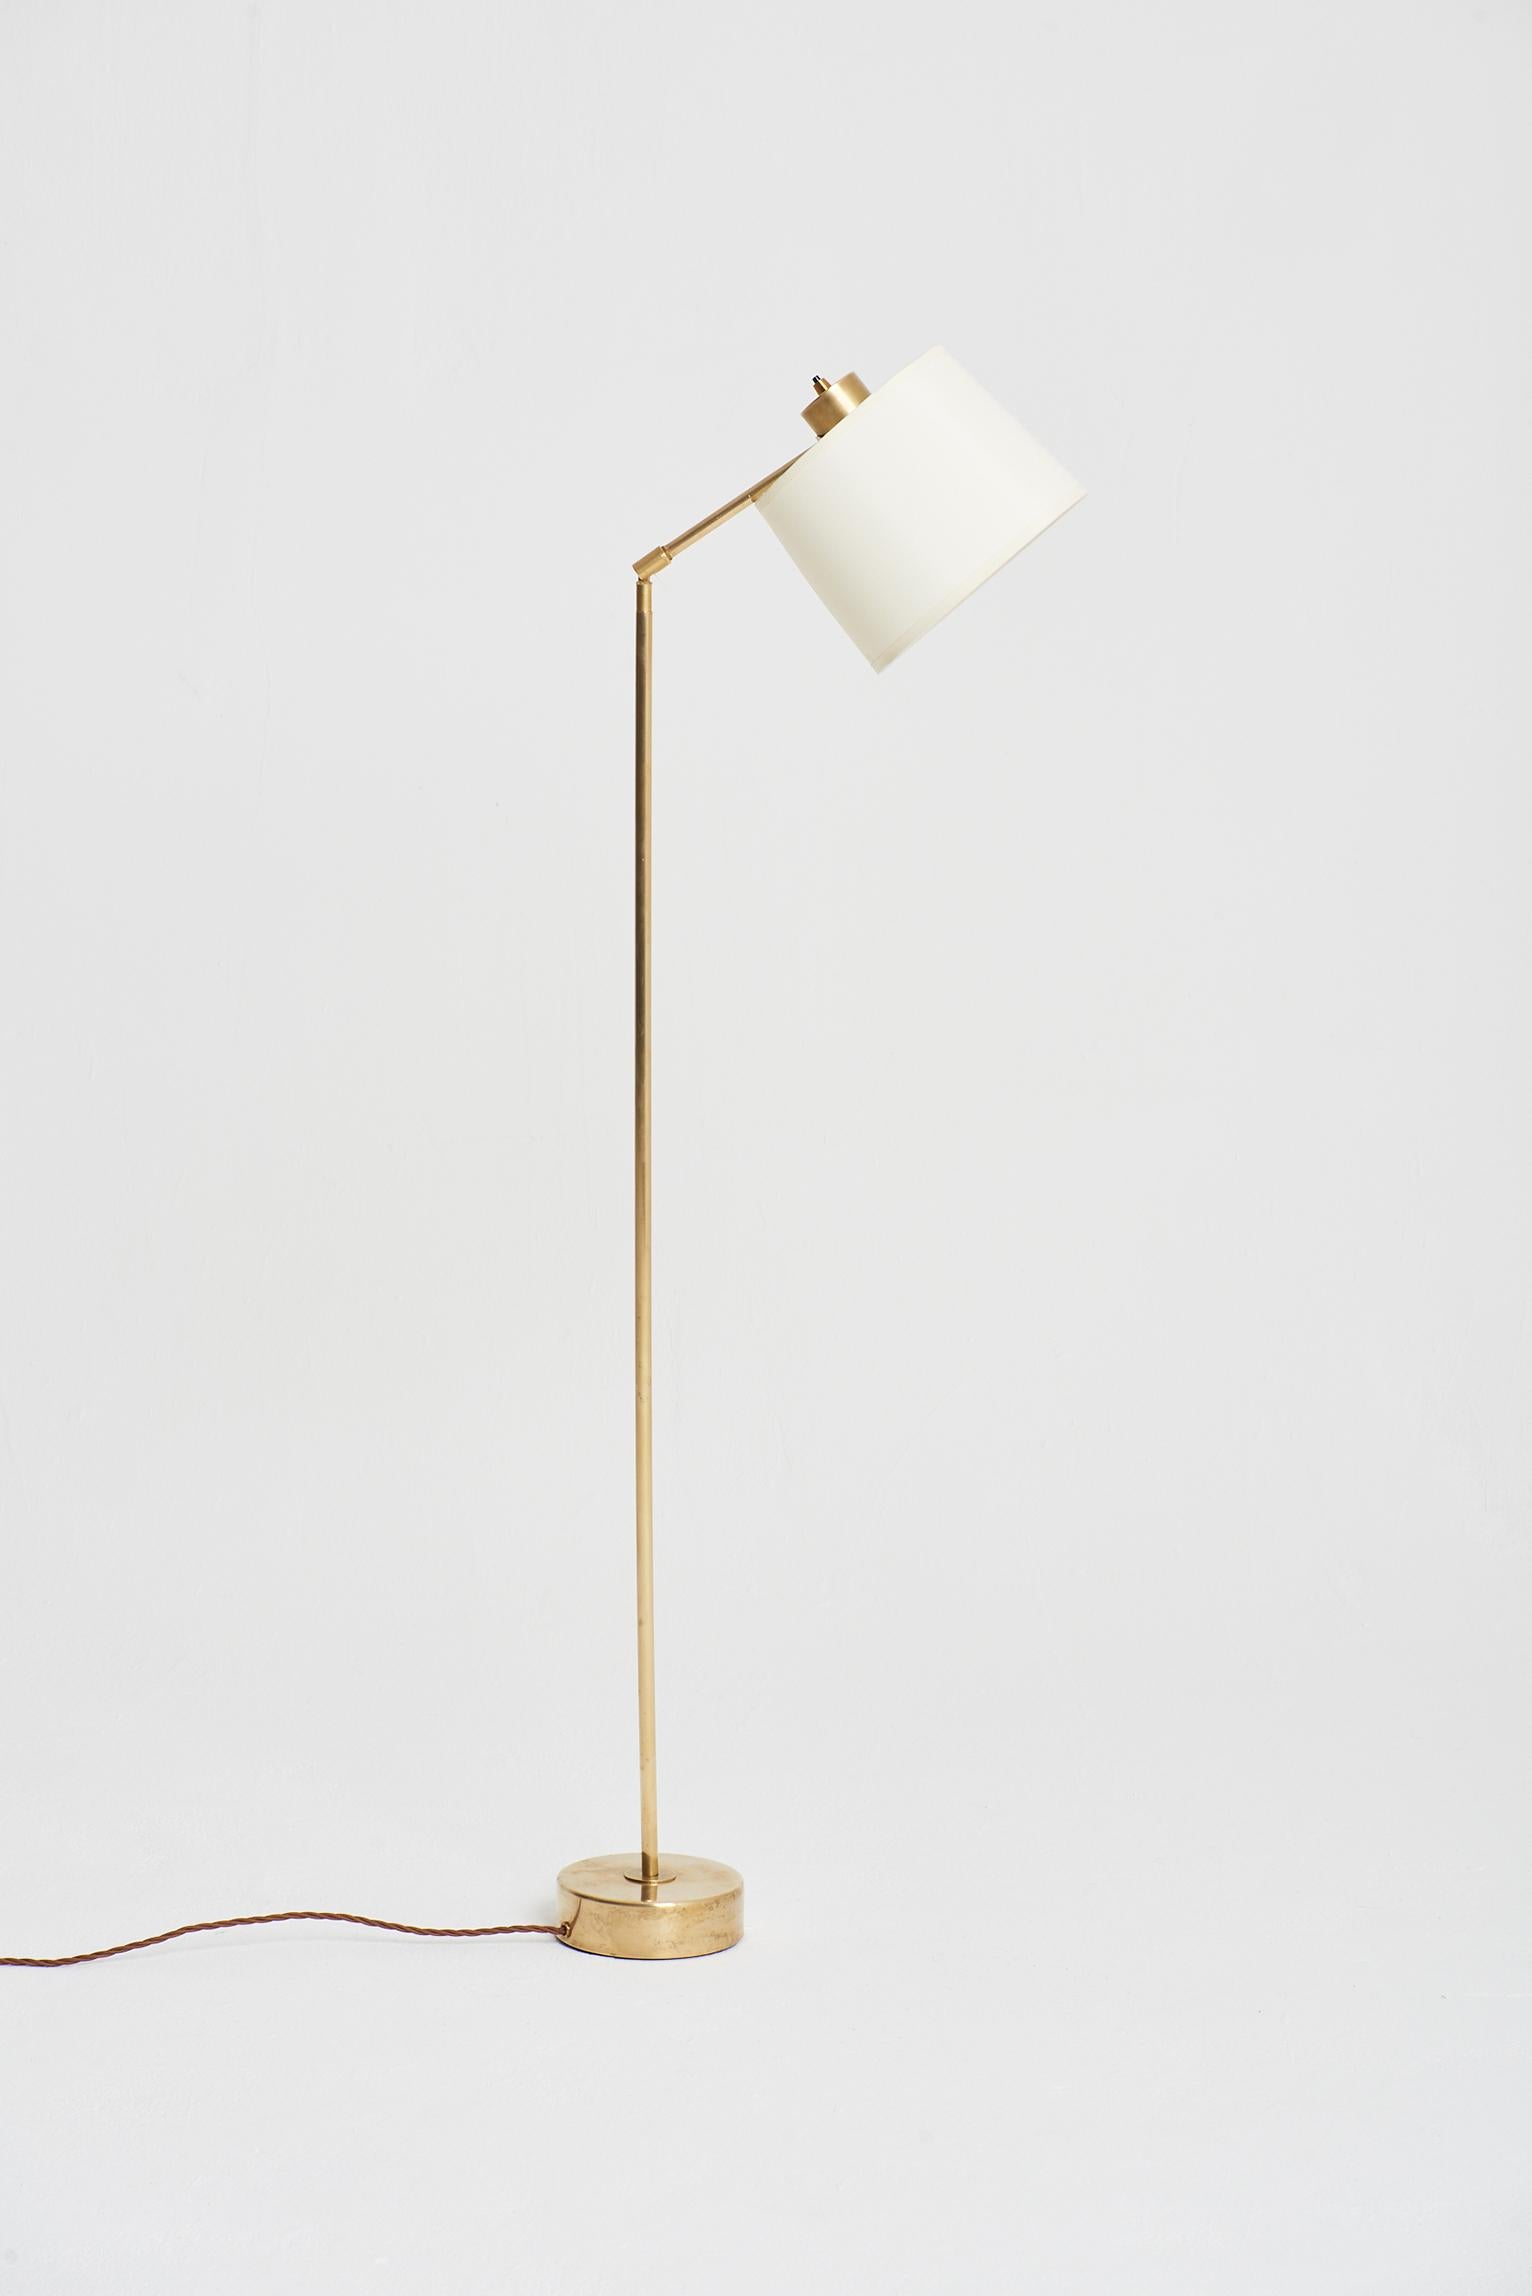 A brass reading floor lamp by Hans Bergström (1910-1996),
Sweden, Circa 1950.